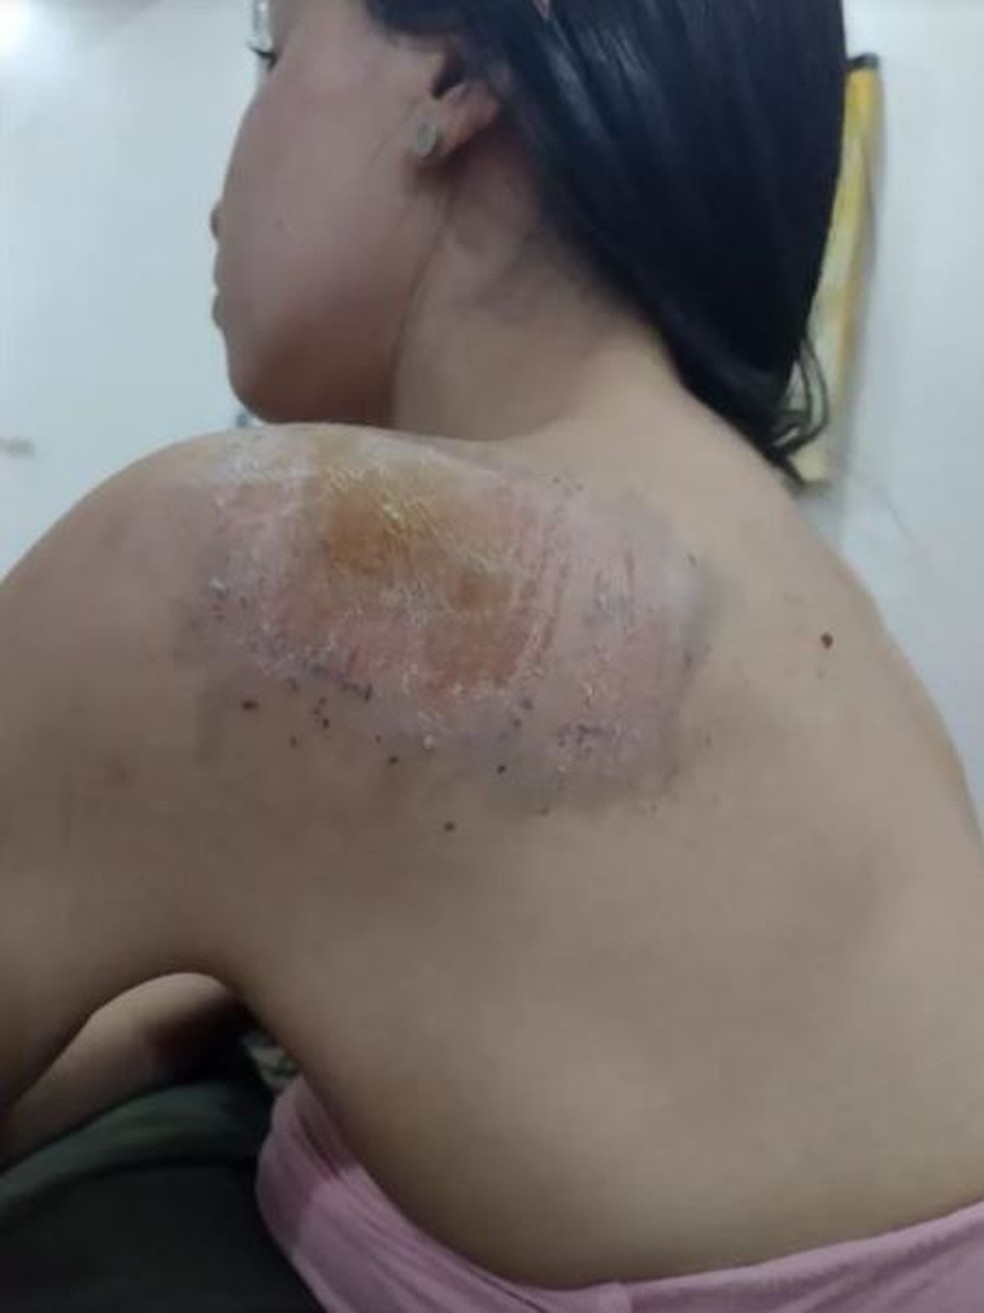 Andressa ficou com ralados pelo corpo após cair da bicicleta, em Palmas — Foto: Arquivo pessoal